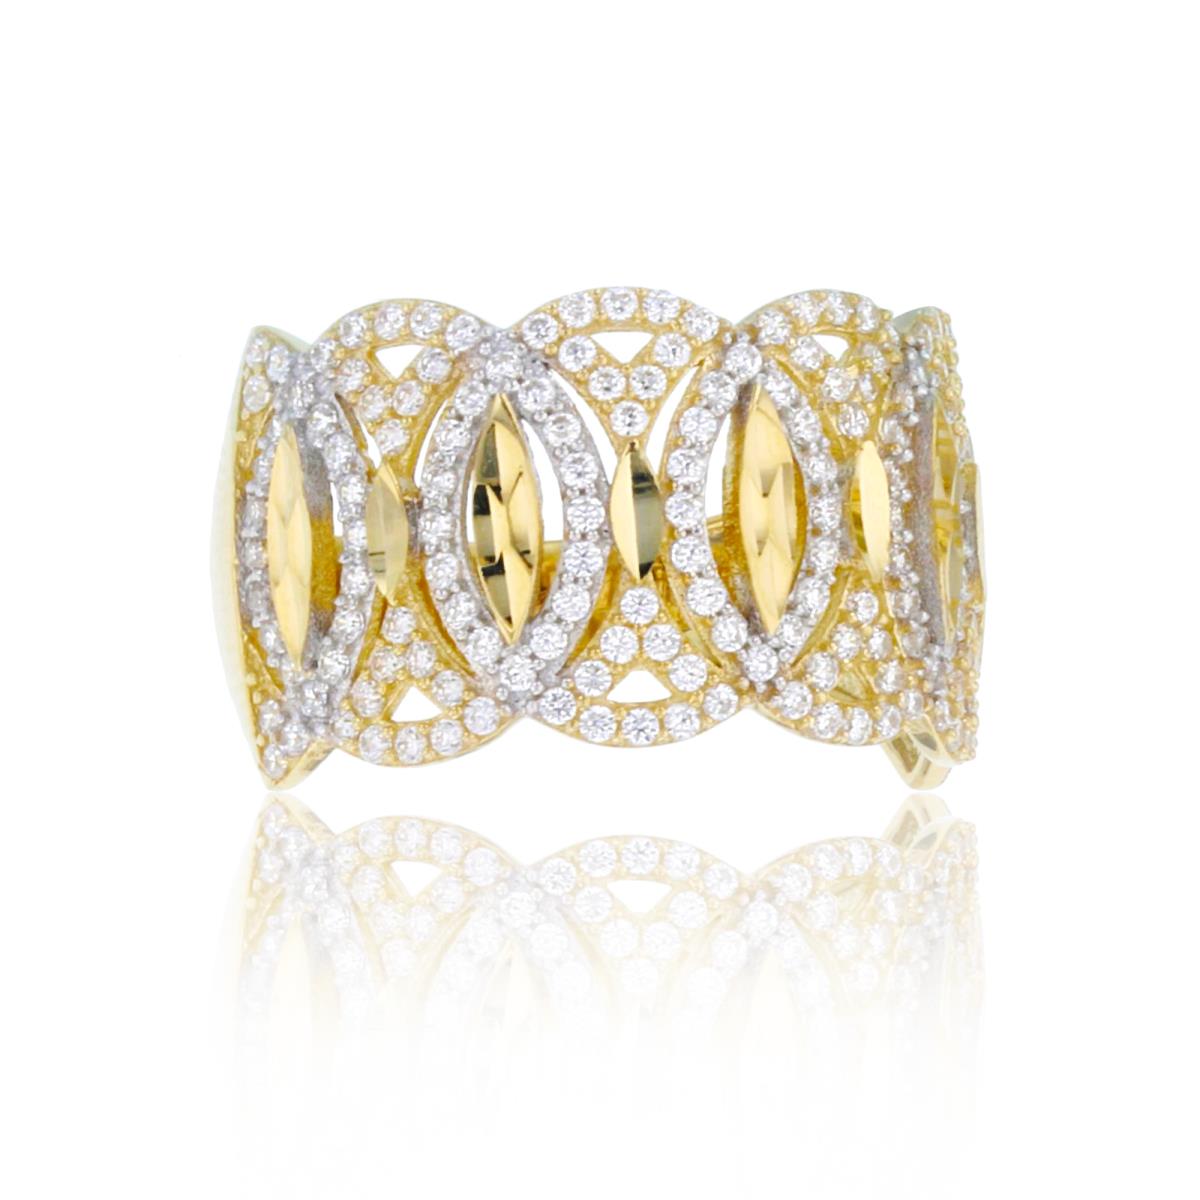 10K Two-Tone Gold DC Paved Interlocking Fashion Ring